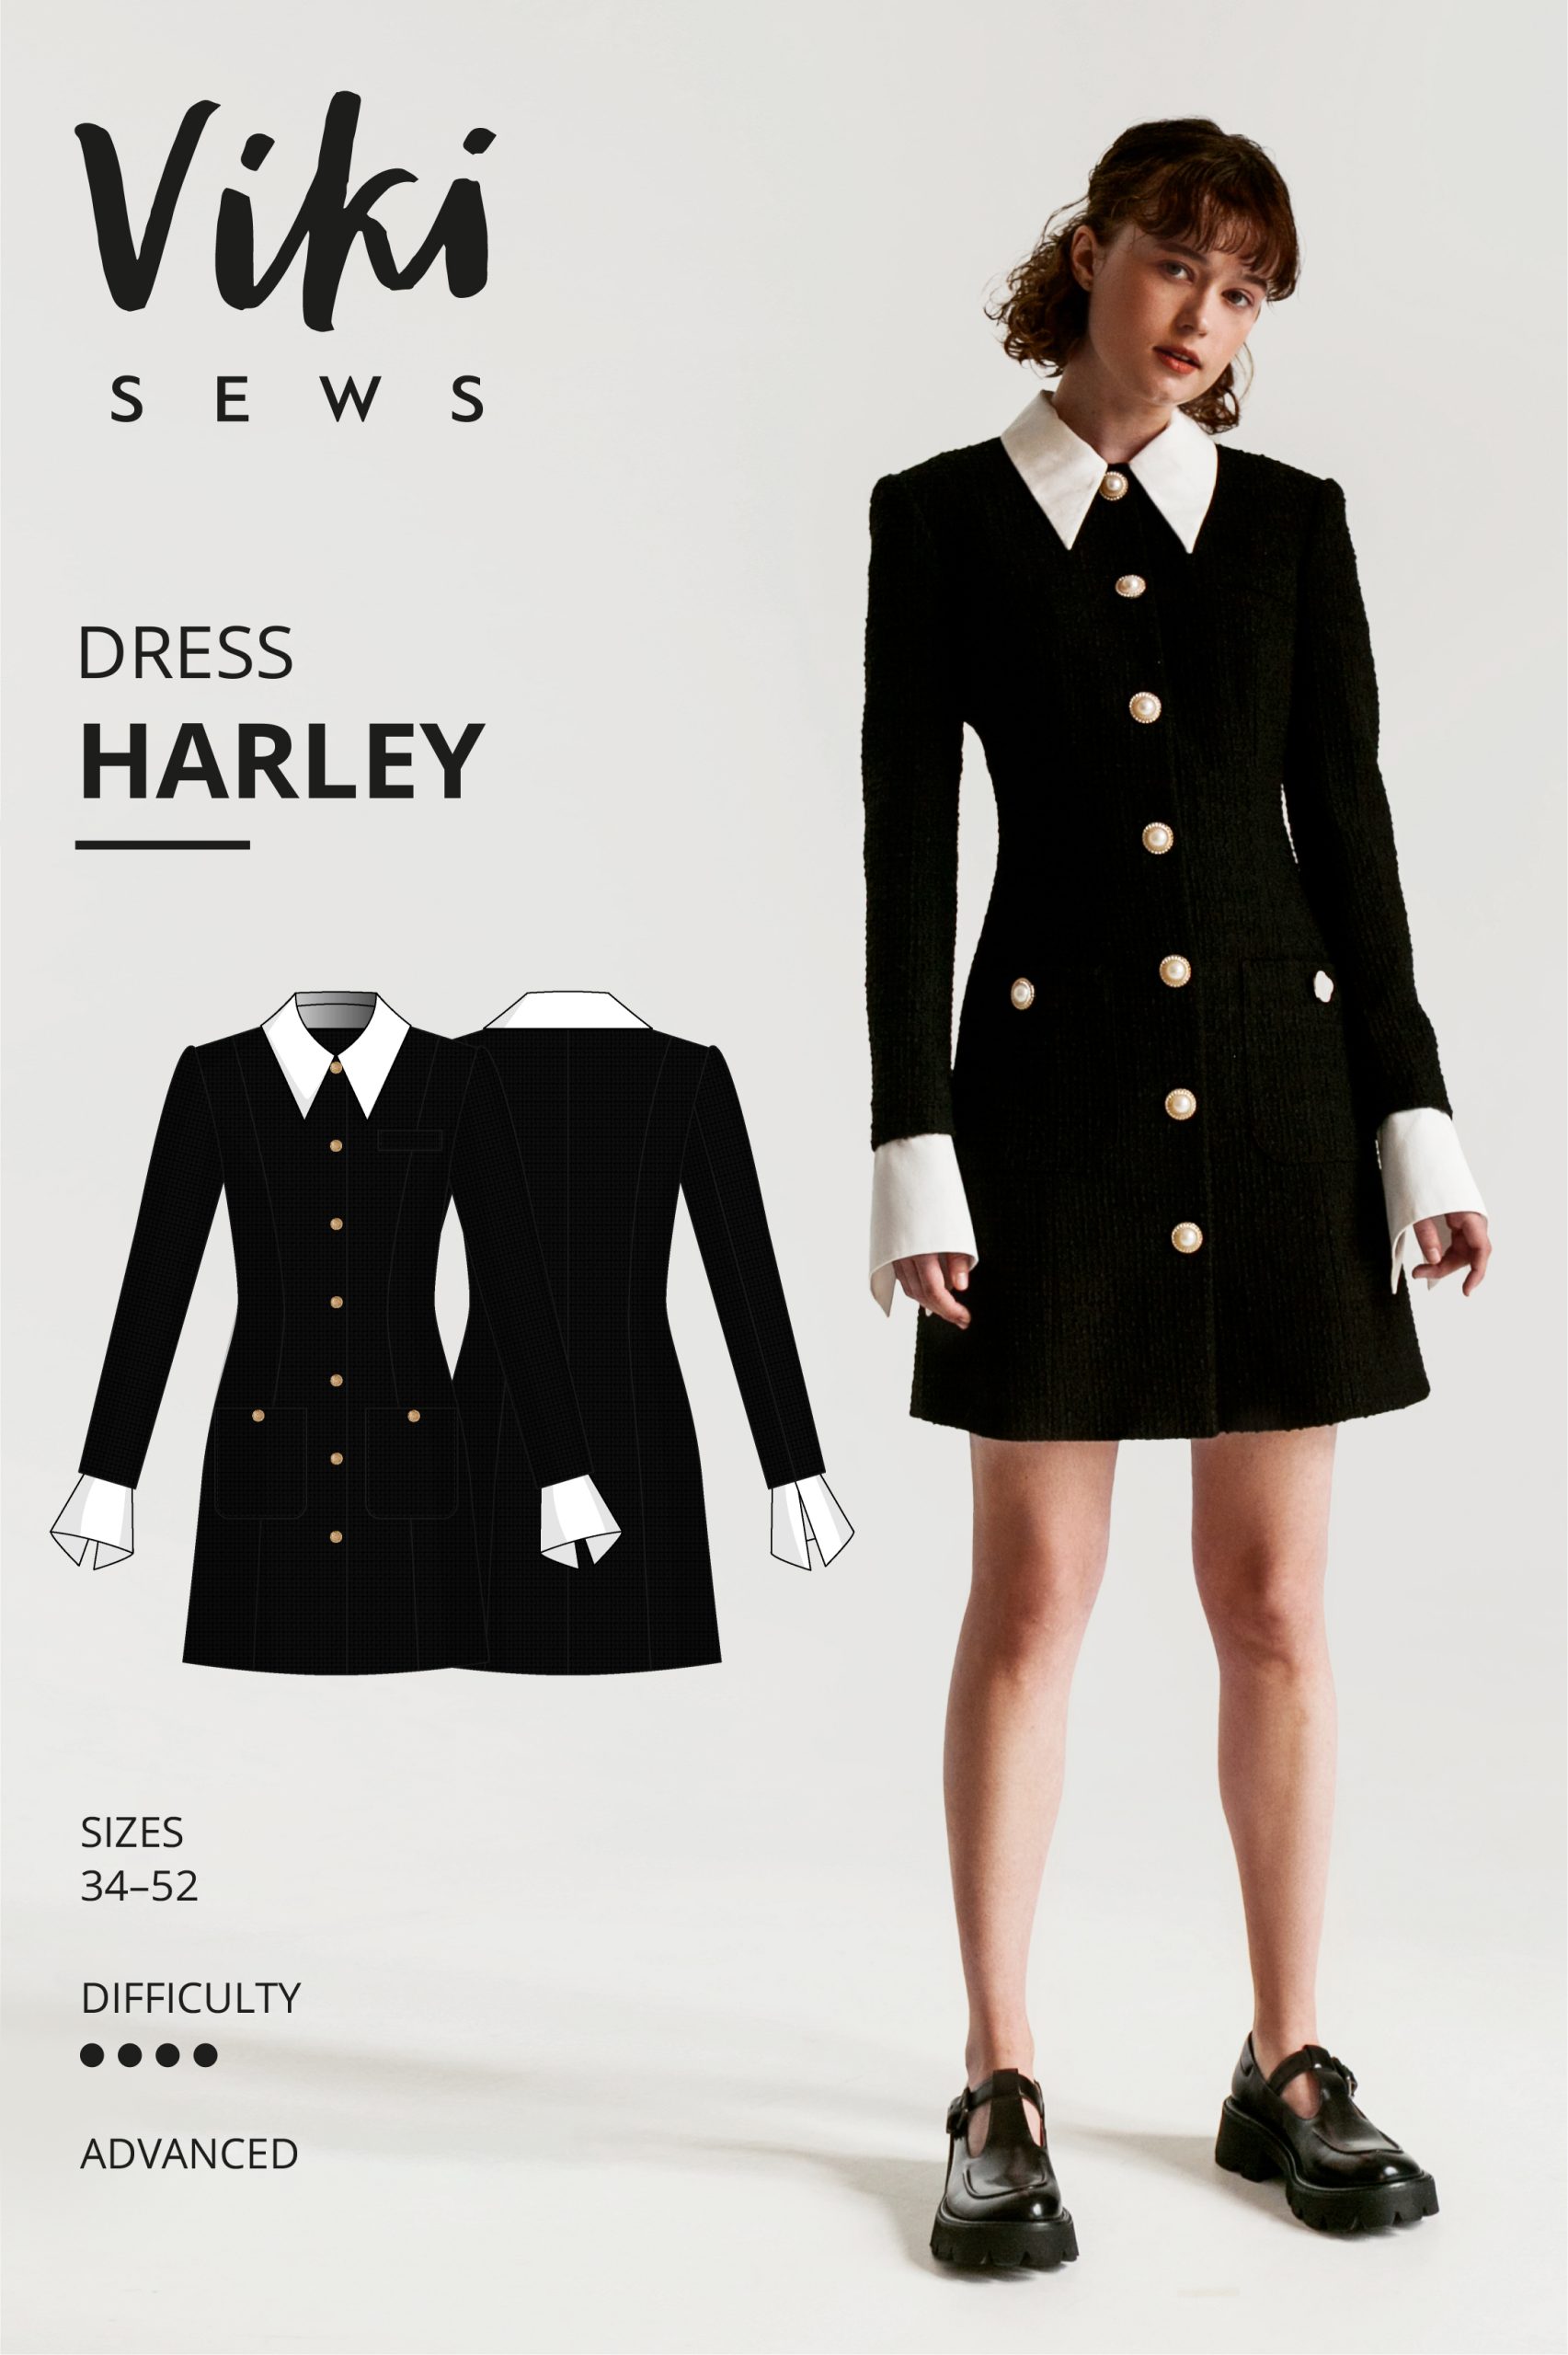 Vikisews Harley Dress PDF